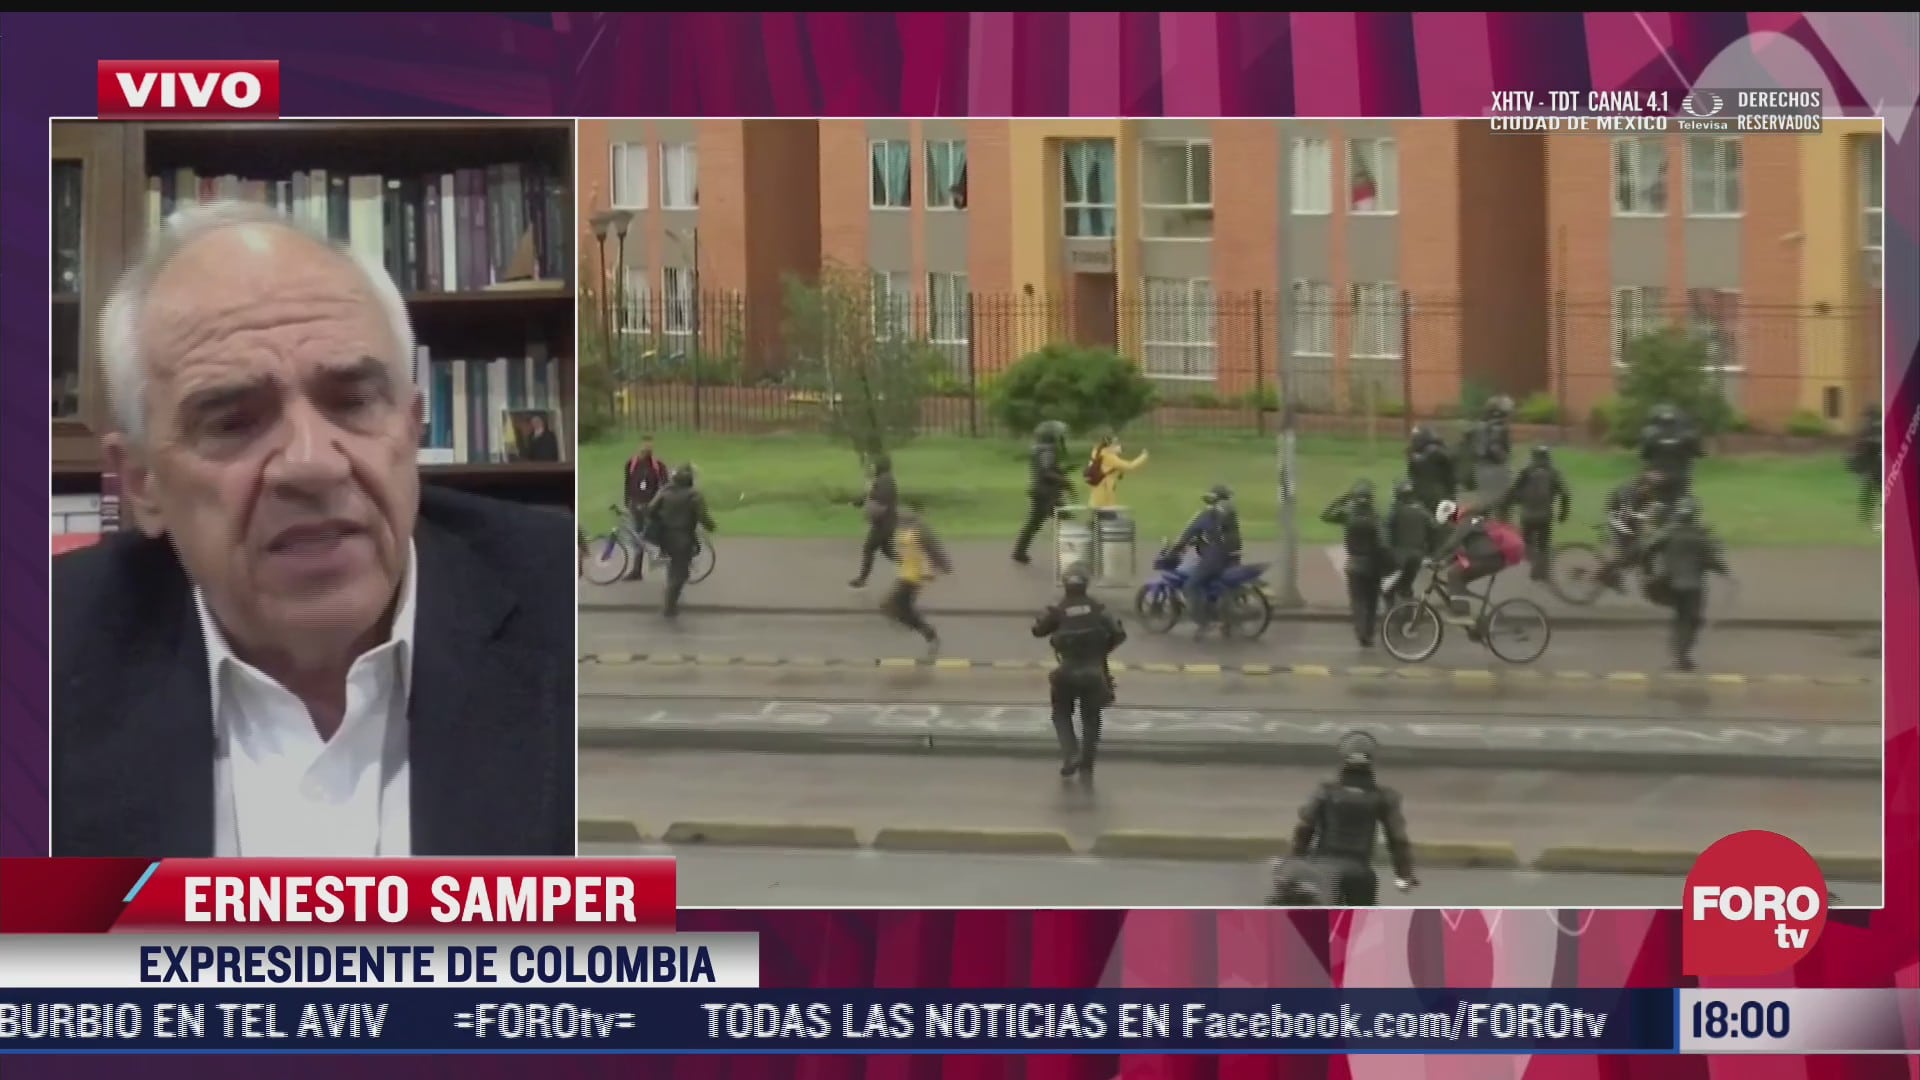 ernesto samper expresidente de colombia cuestiona las medidas adoptadas por el gobierno